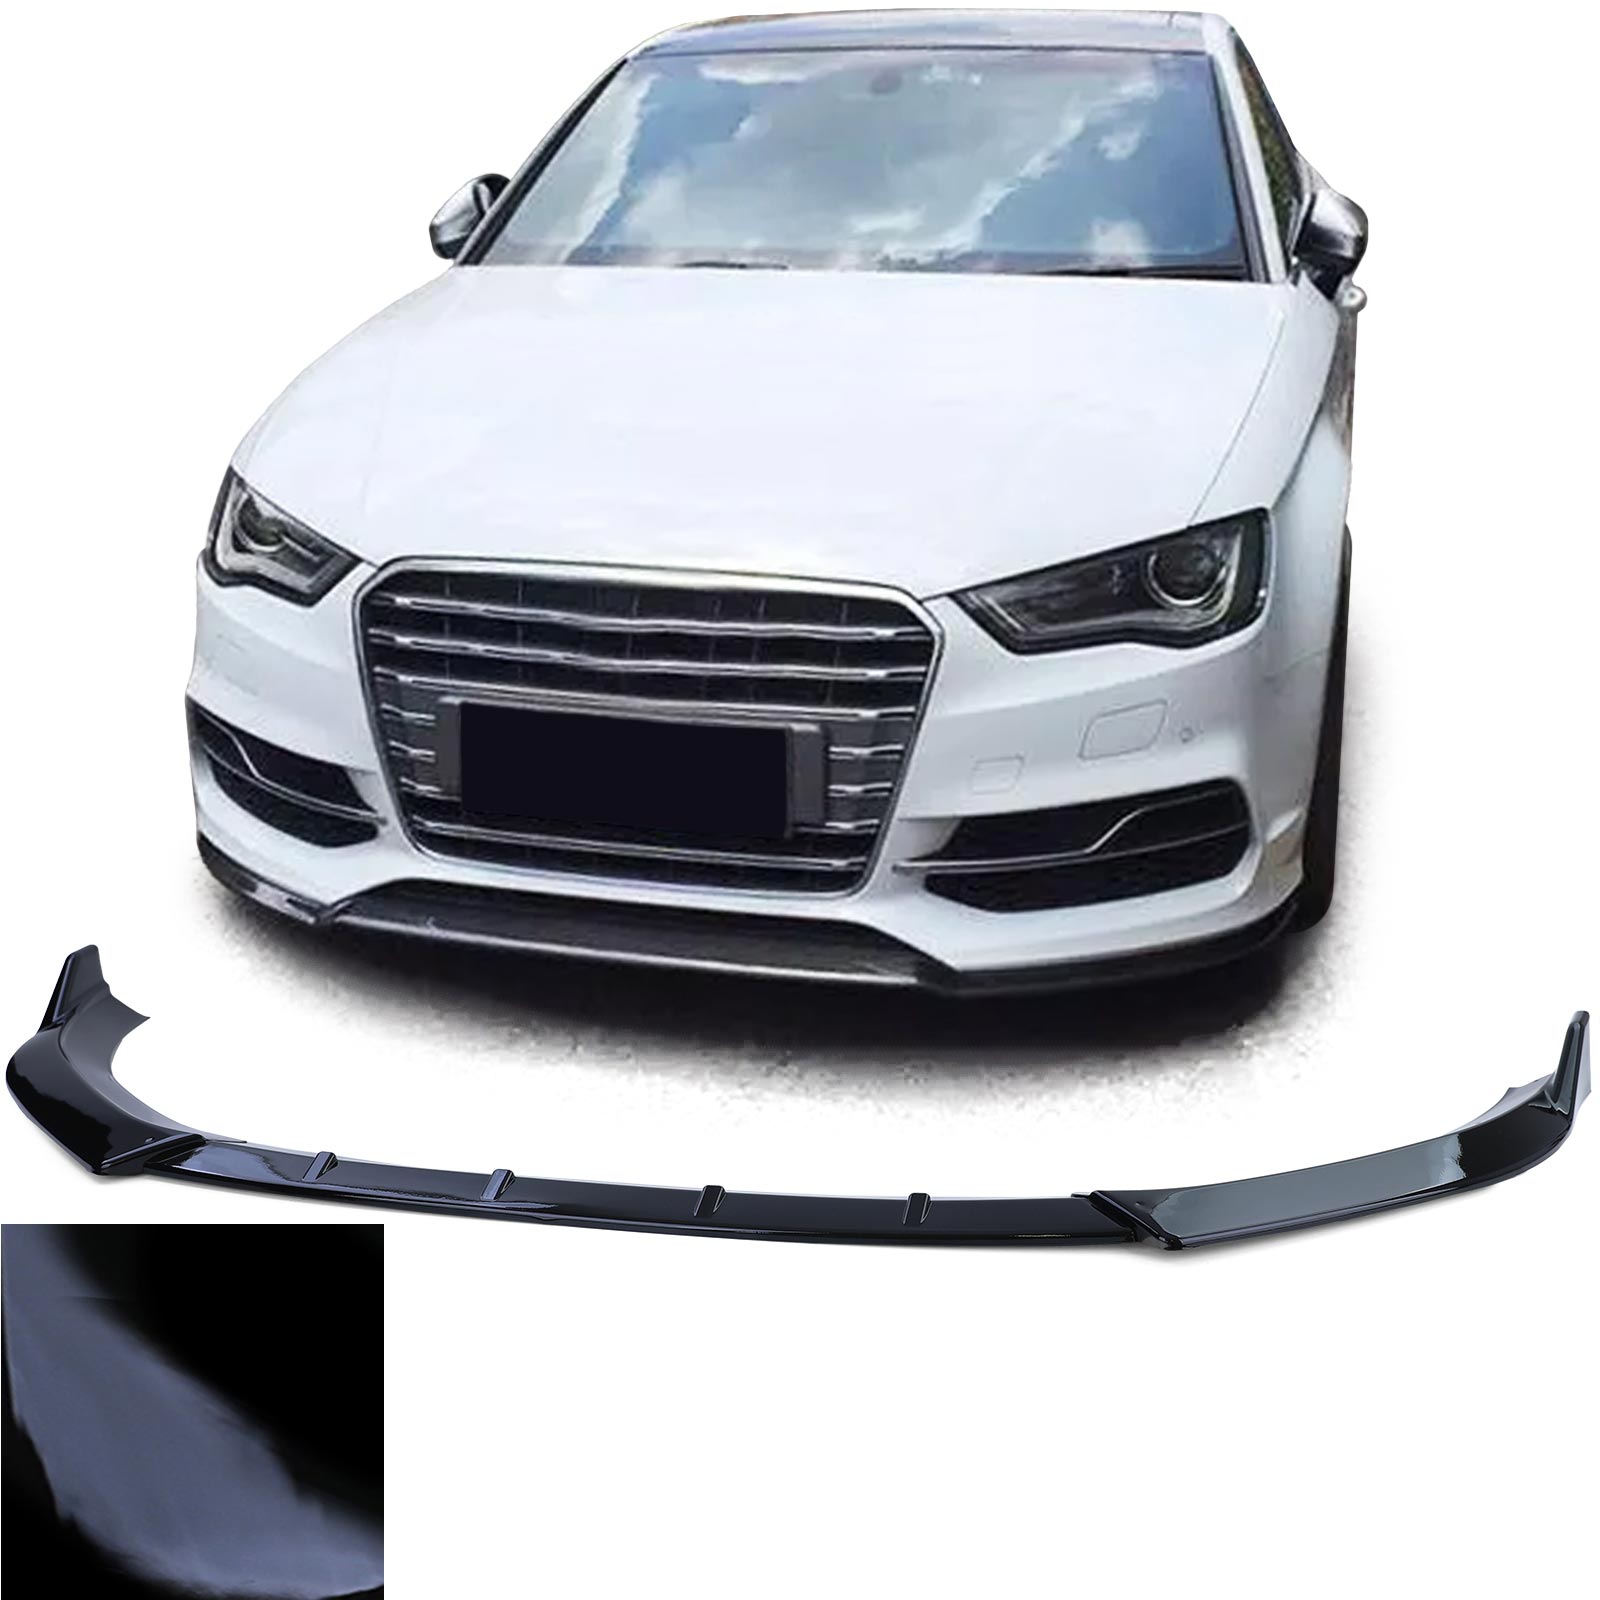 Auto Gummi Fußmatten Schwarz Premium Set für Leon + Golf 7 + Audi A3 8V ab  12 kaufen